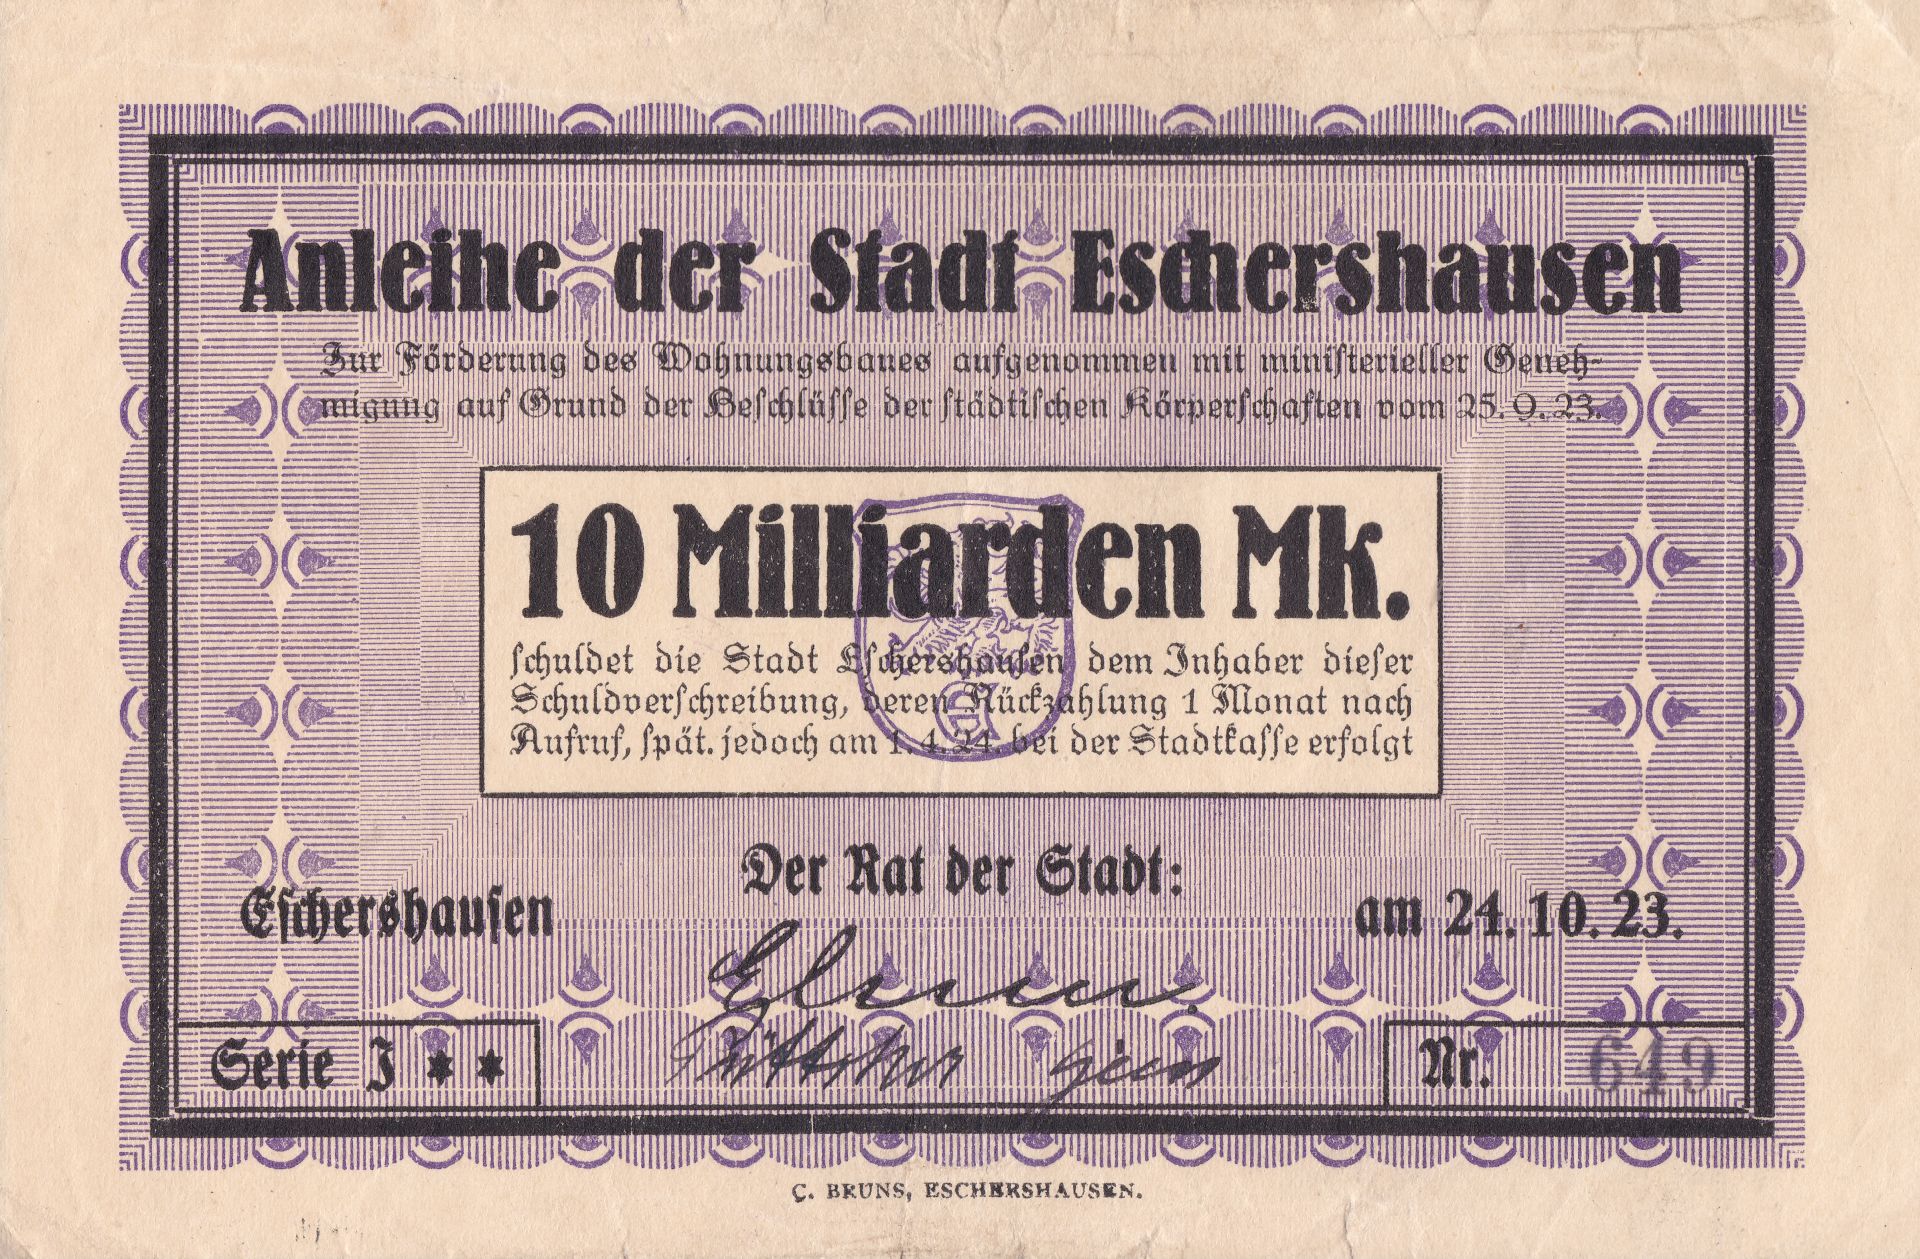 Inflationsgeld der Stadt Eschershausen, Frontseite des 10-Milliarden-Mark-Scheins 1923